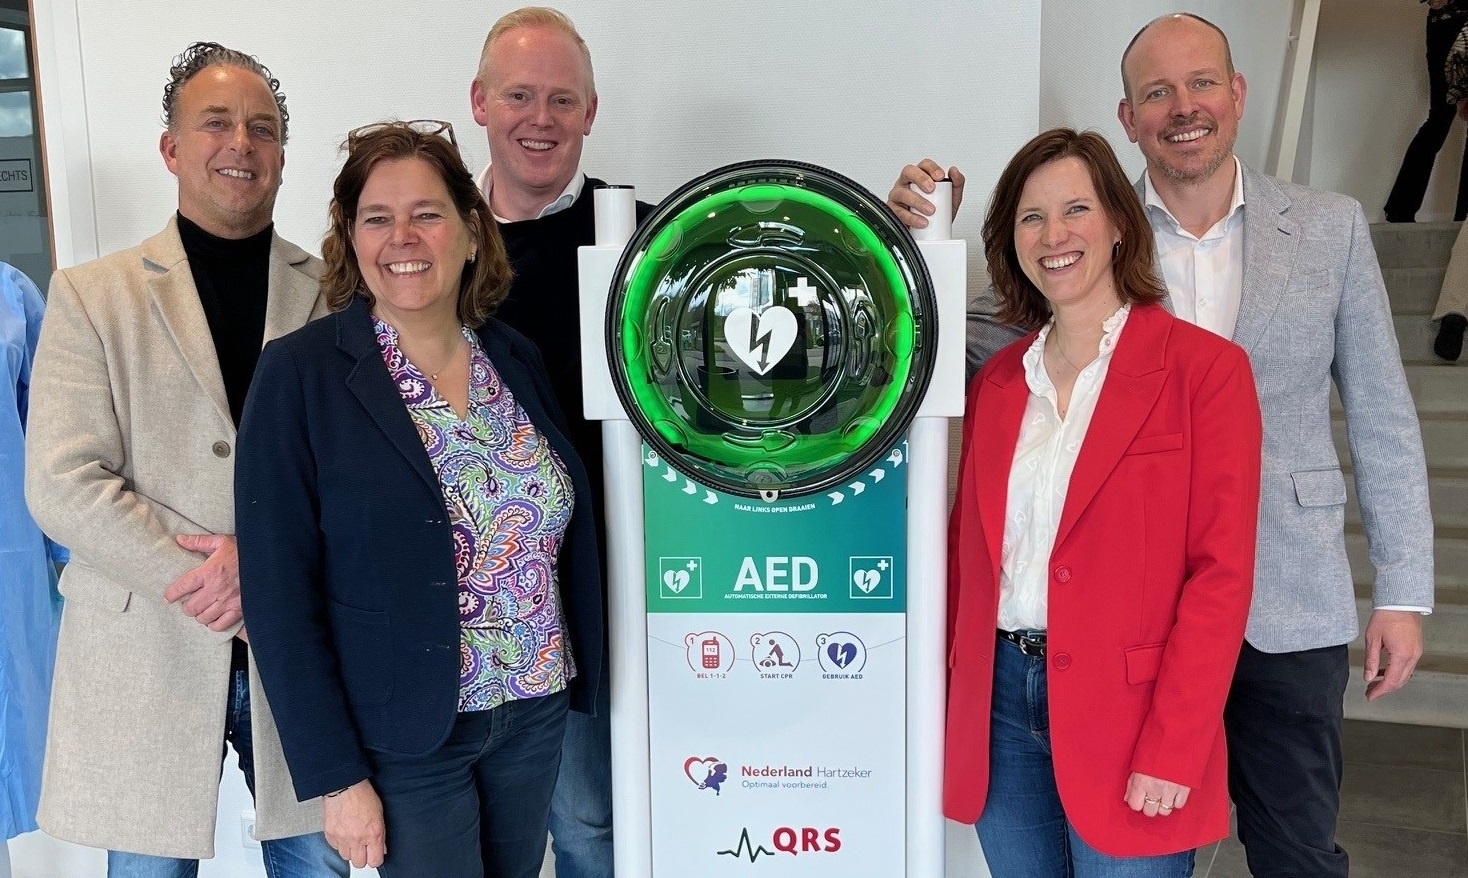 QRS bevordert veiligheid met AED-initiatief en partnerschap met Nederland Hartzeker